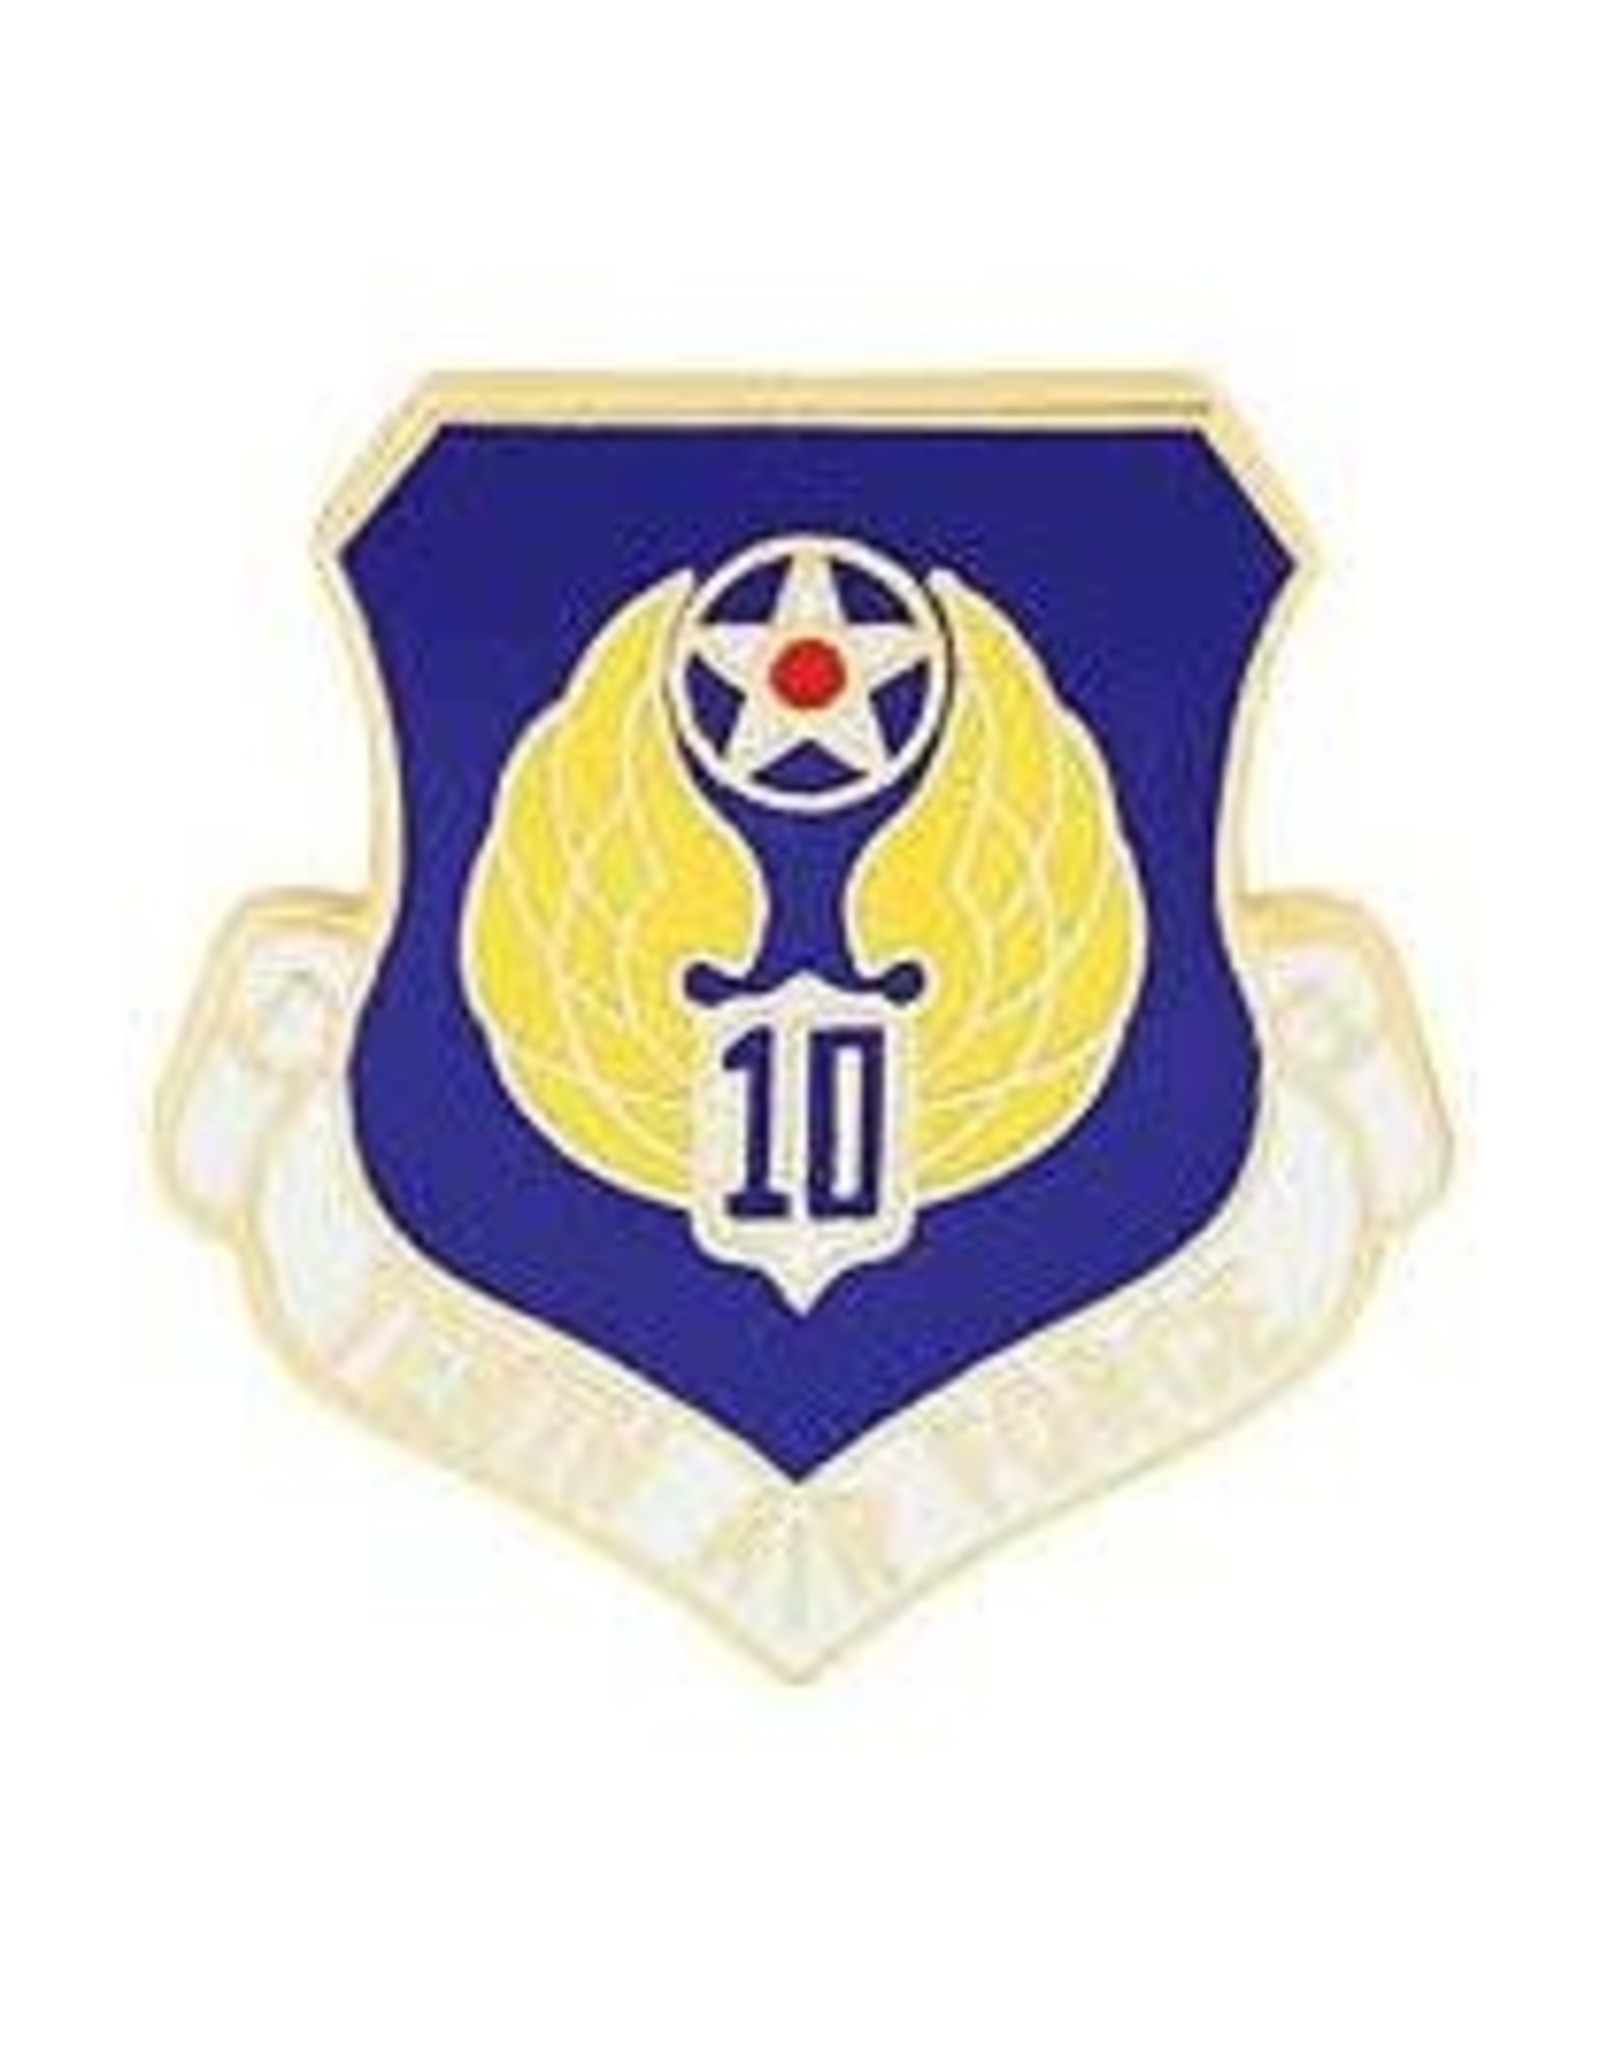 Pin - USAF 010th Shield